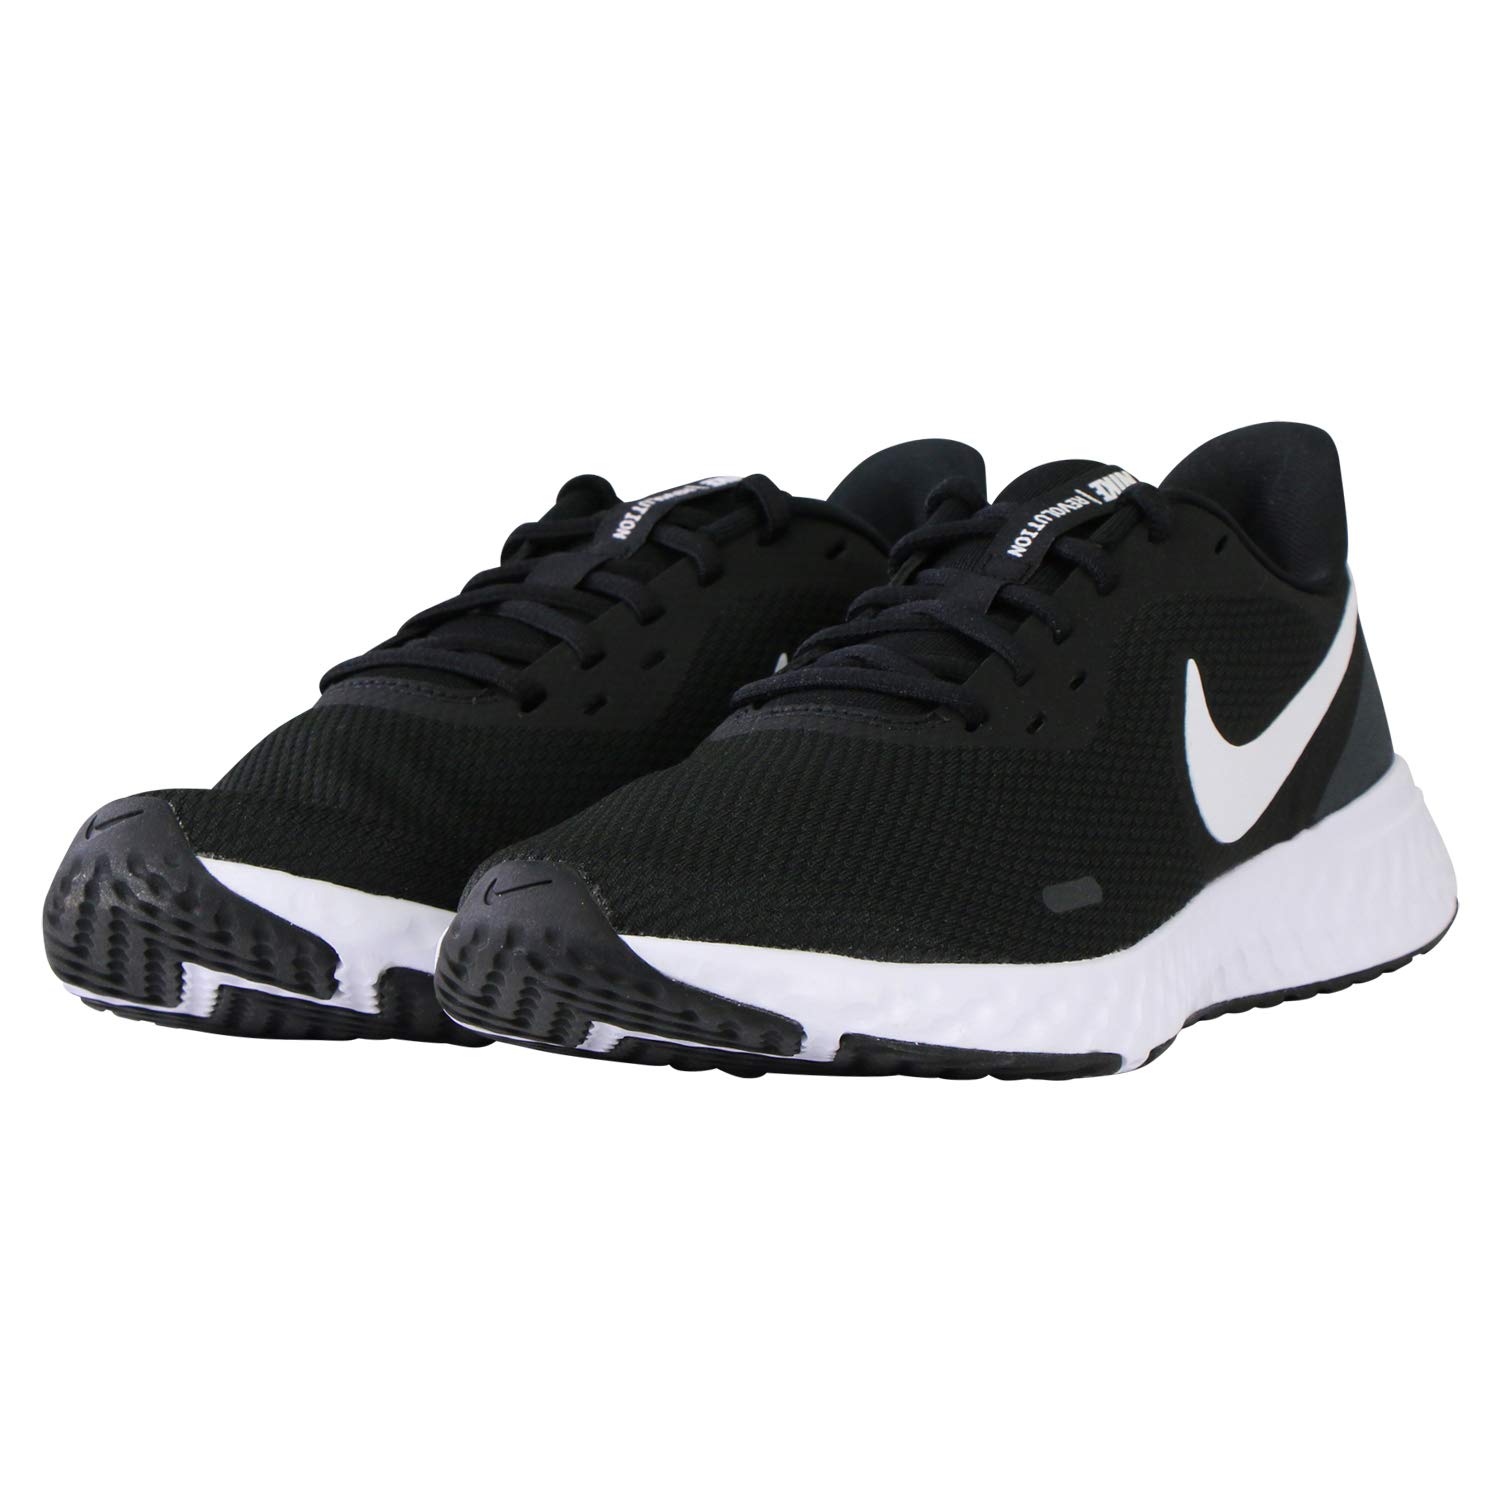 Nike Men's Revolution 5 Wide Running Shoe, Black/White-Anthracite, 9 4E US